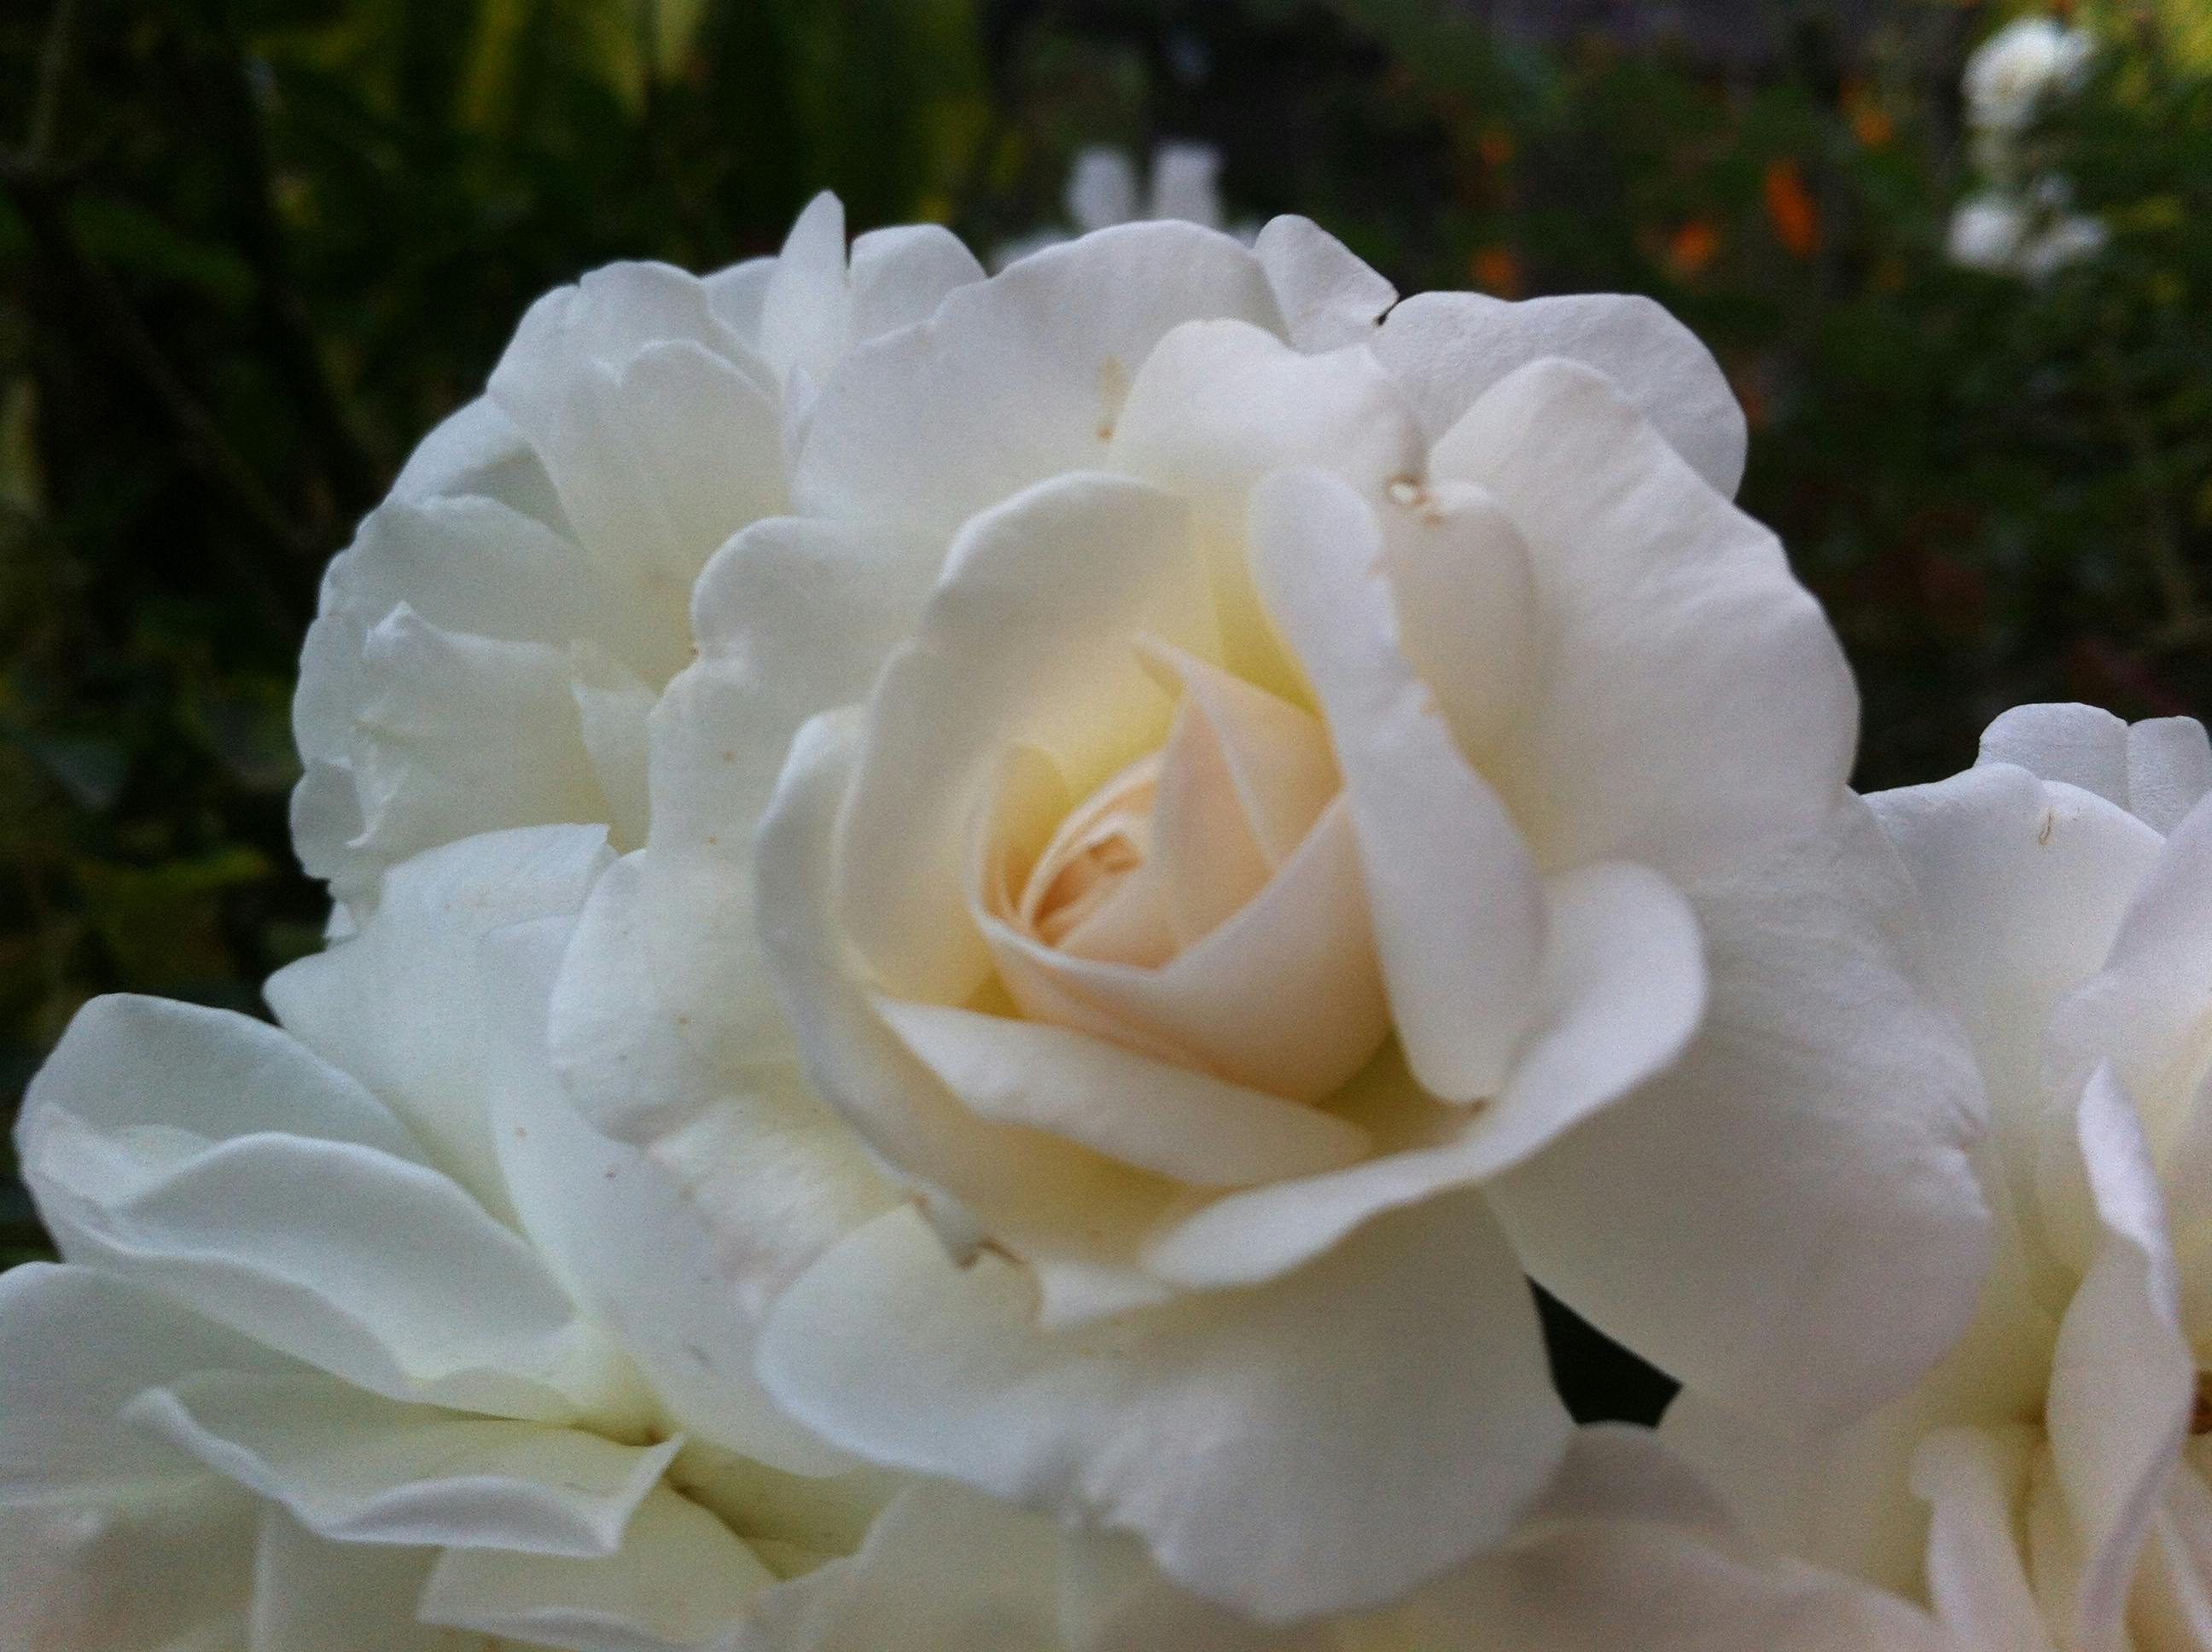 Gambar Bunga Mawar Putih Yang Indah - Koleksi Gambar Bunga